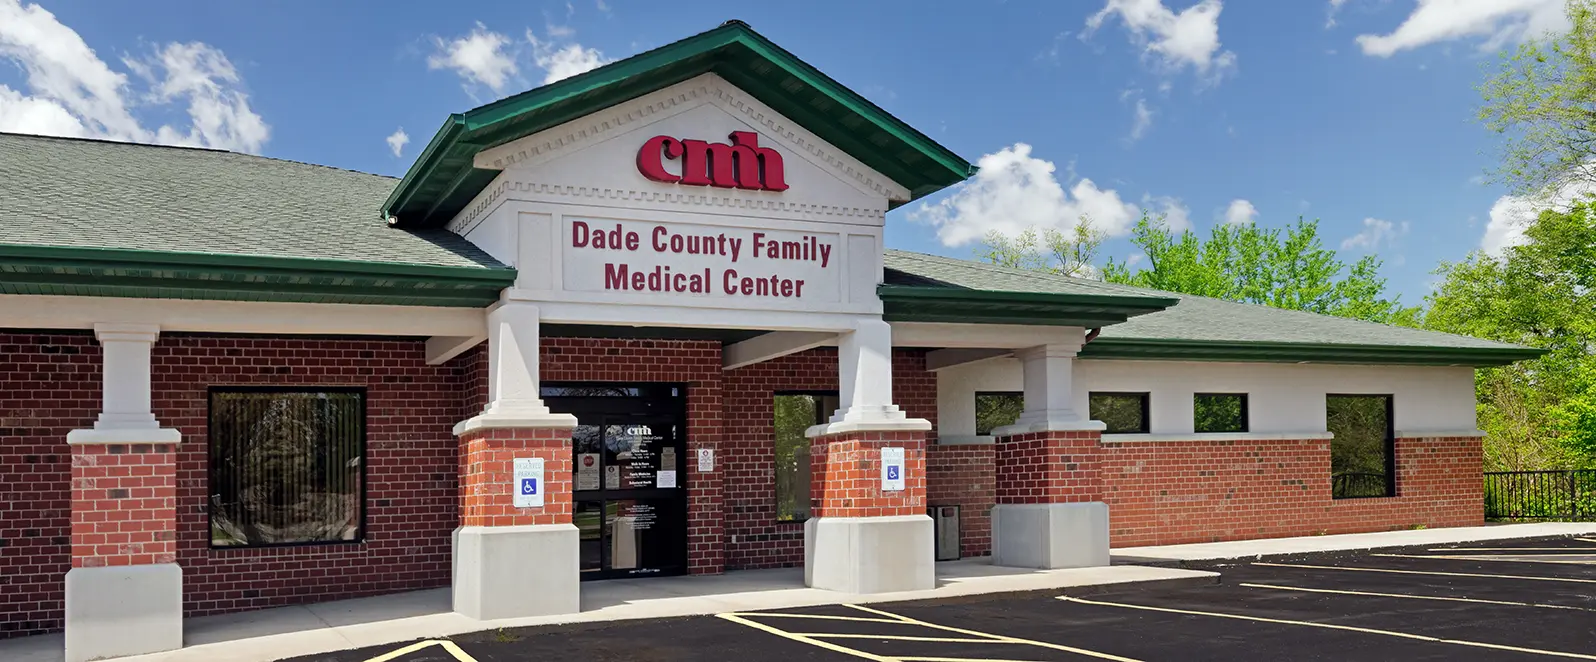 Dade County Family Medical Center exterior